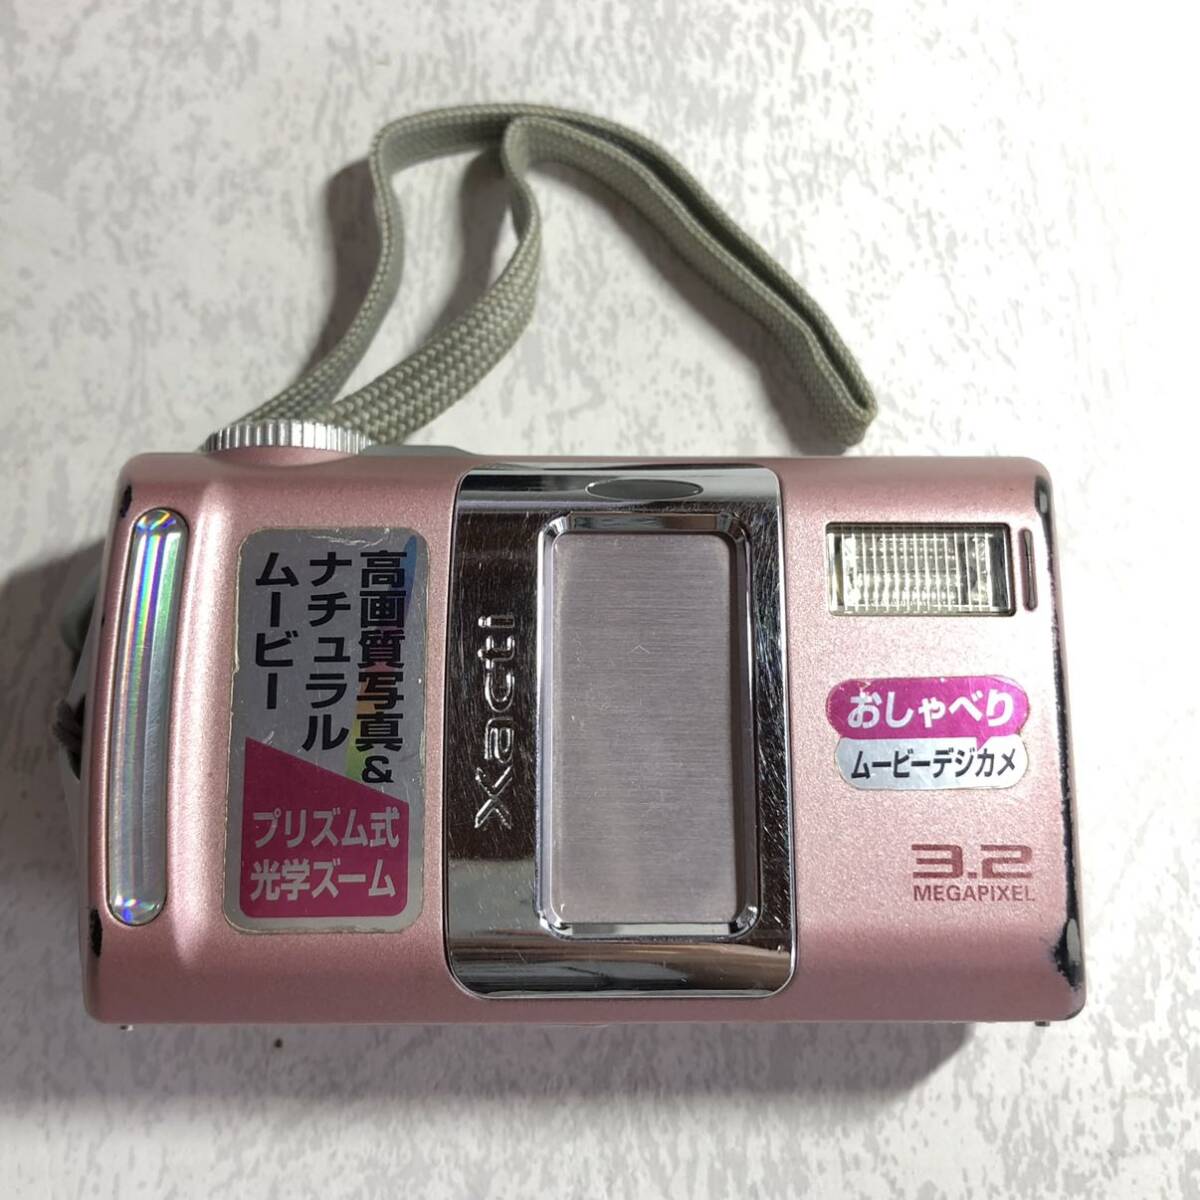 ●SANYO サンヨー デジタルカメラ DSC-J1型 Xacti ザクティ ミスティーピンク 説明書付き 箱付き V81_画像2